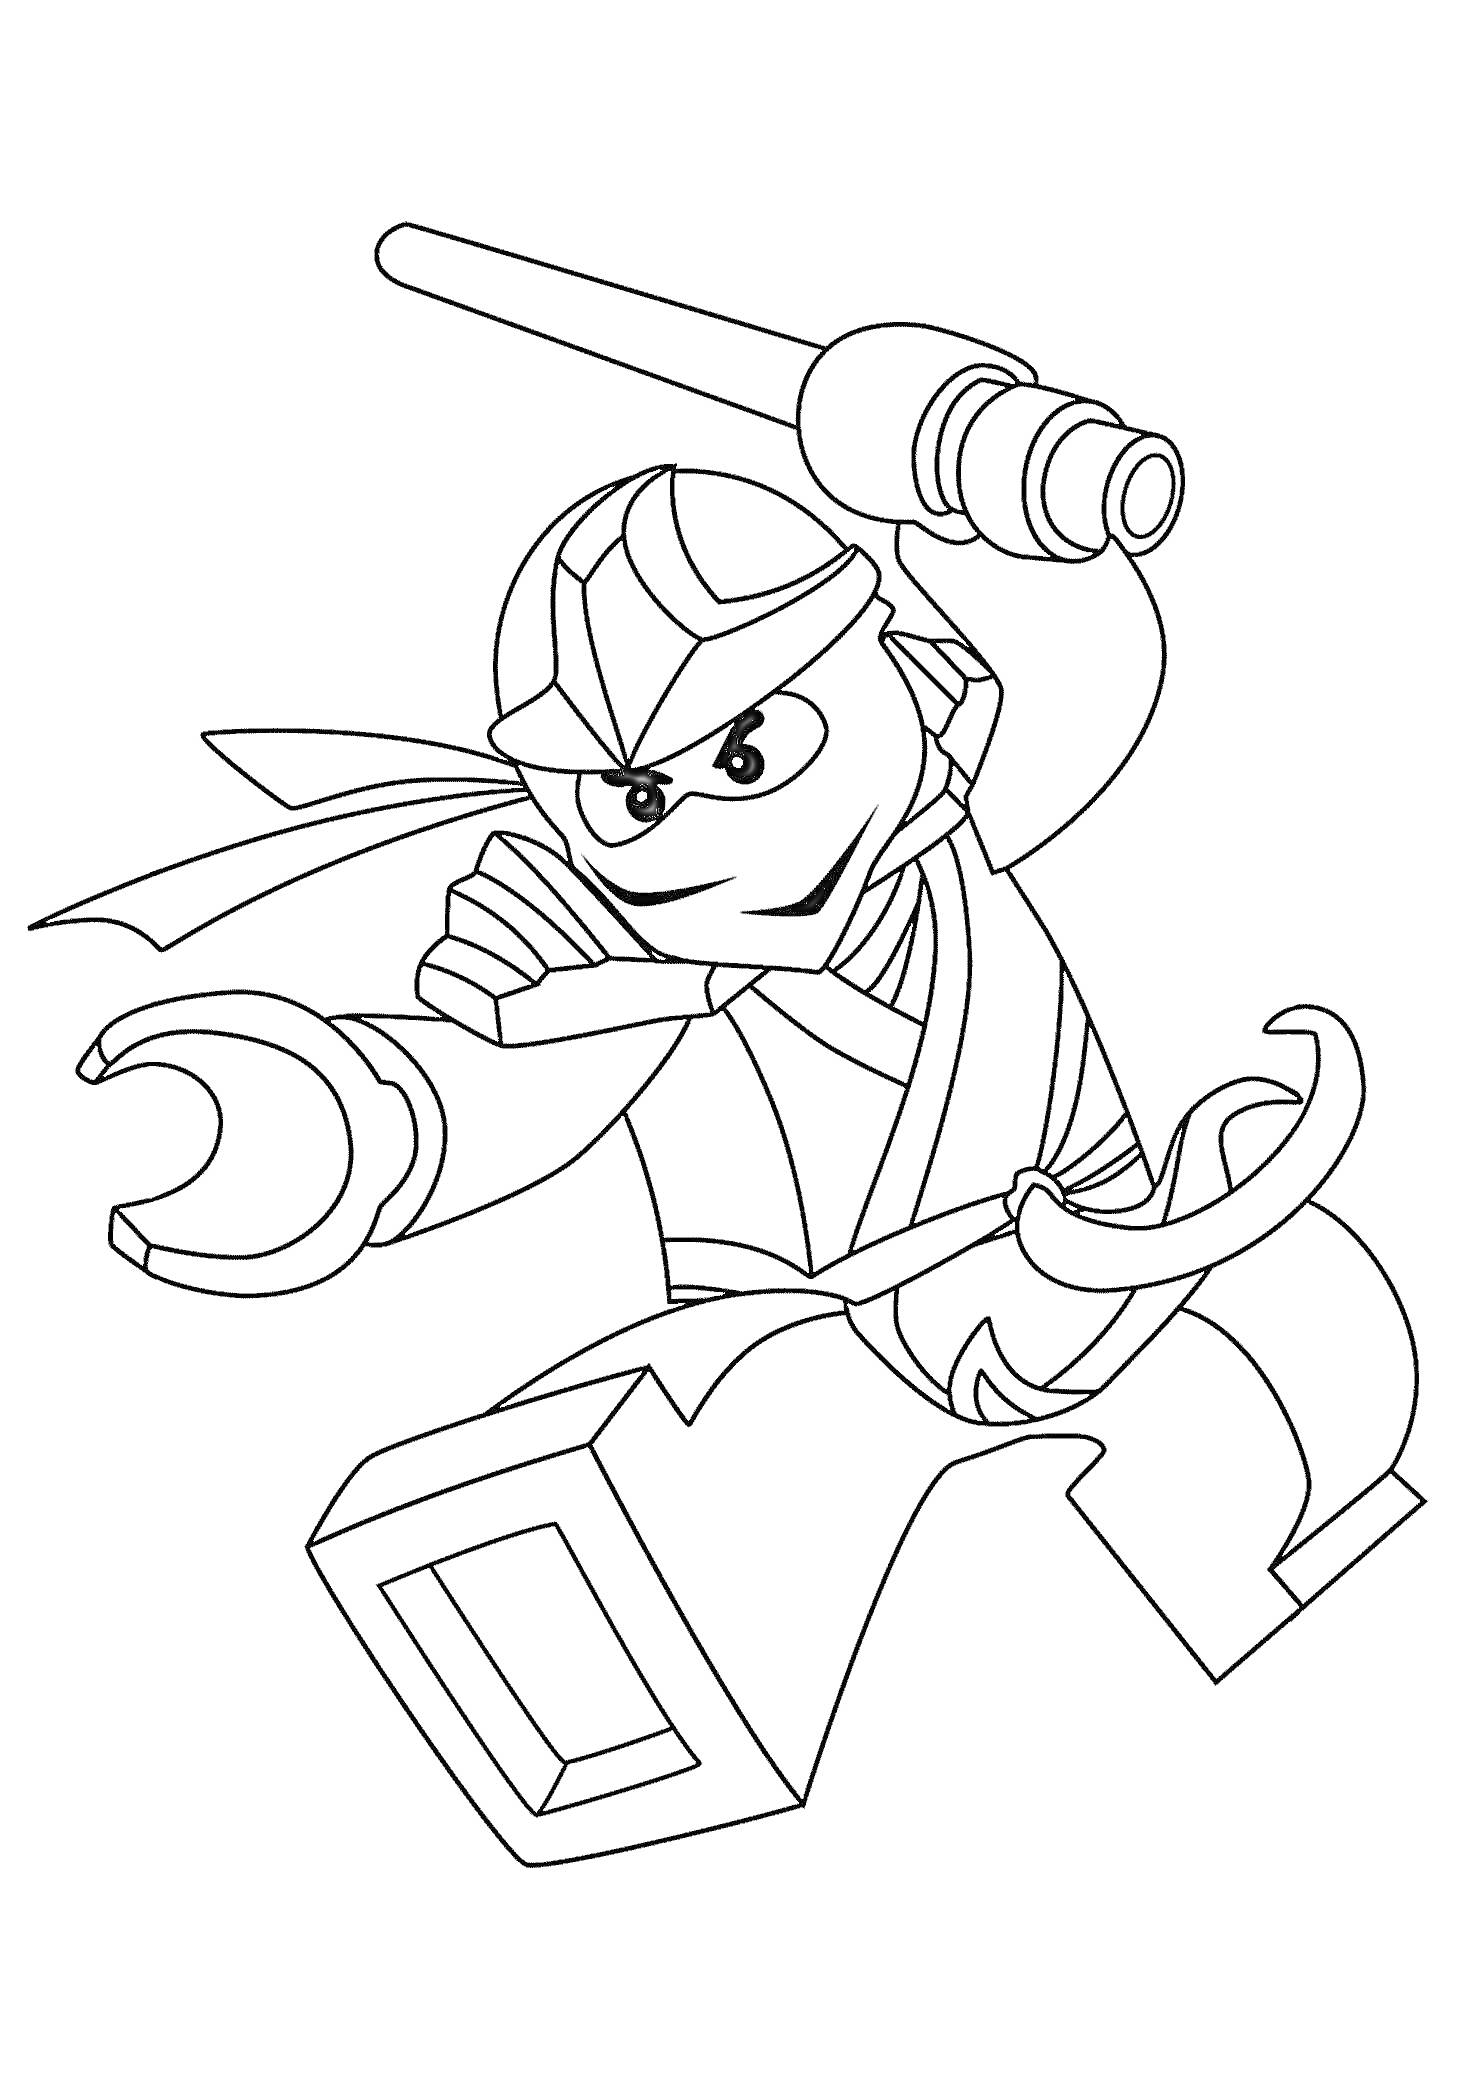 Раскраска LEGO фигурка в движении с маской, посохом и мечом в боевой стойке